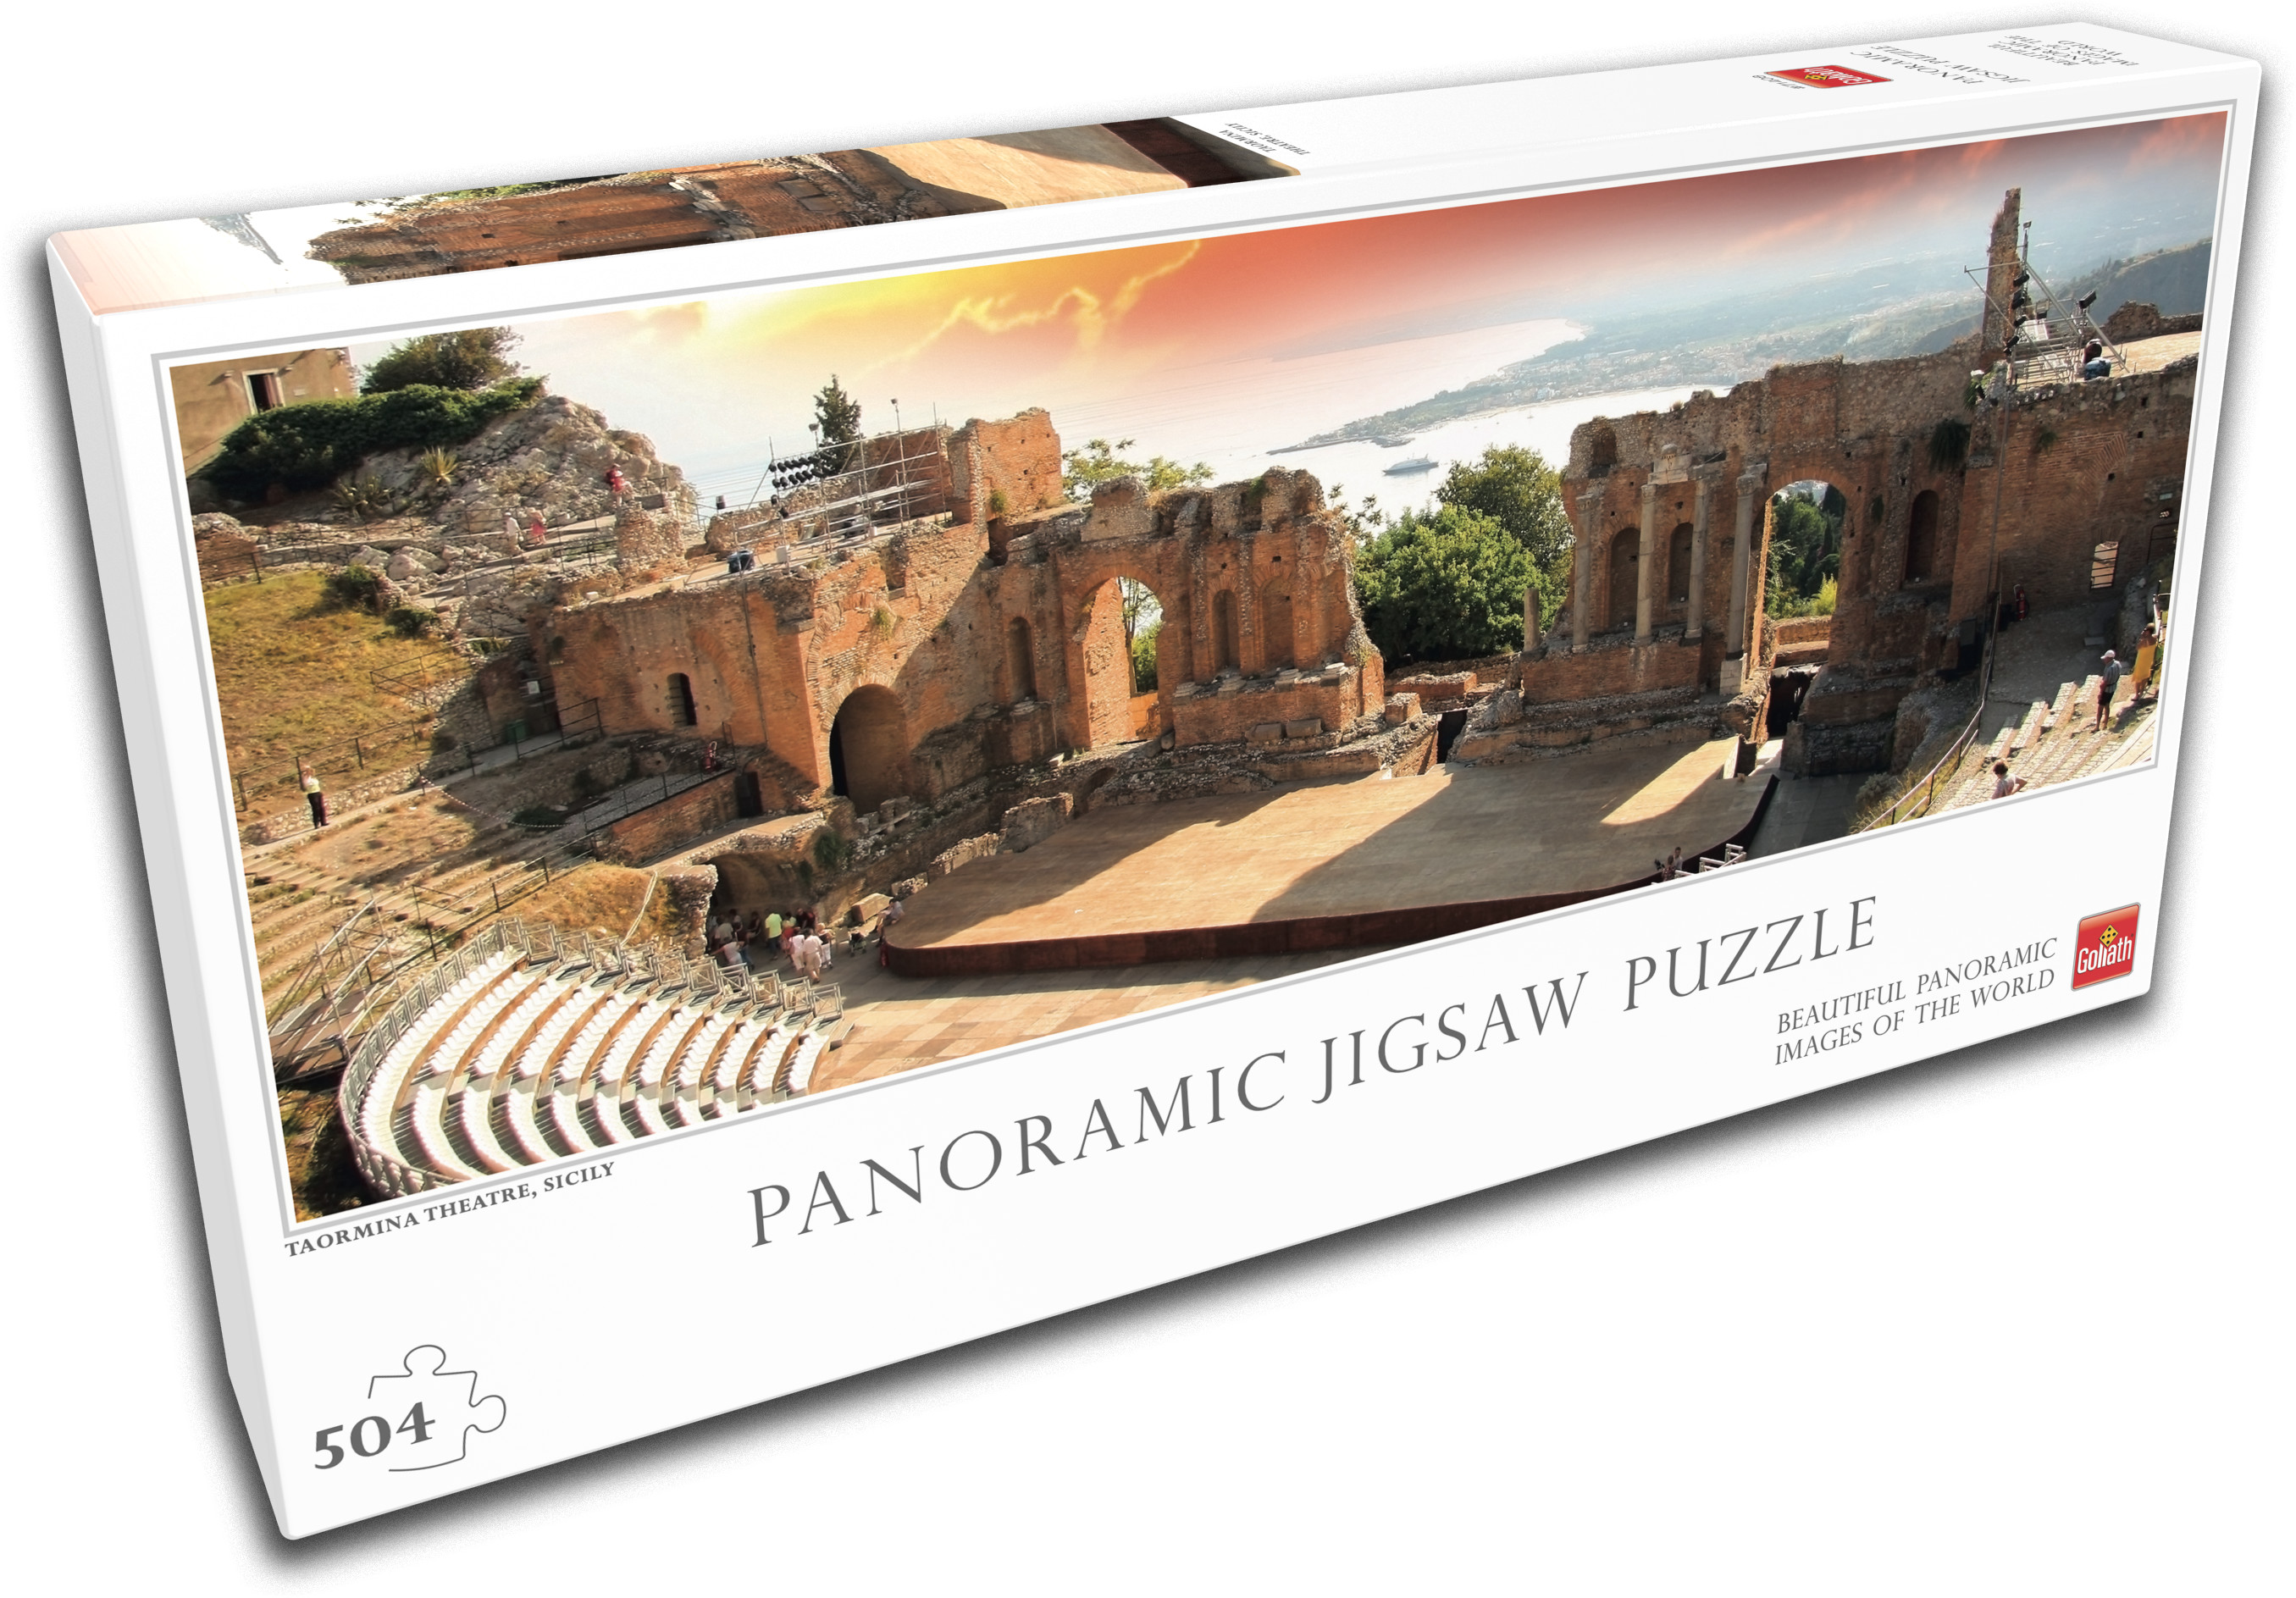 Goliath puzzle Taormina Theatre, 71408